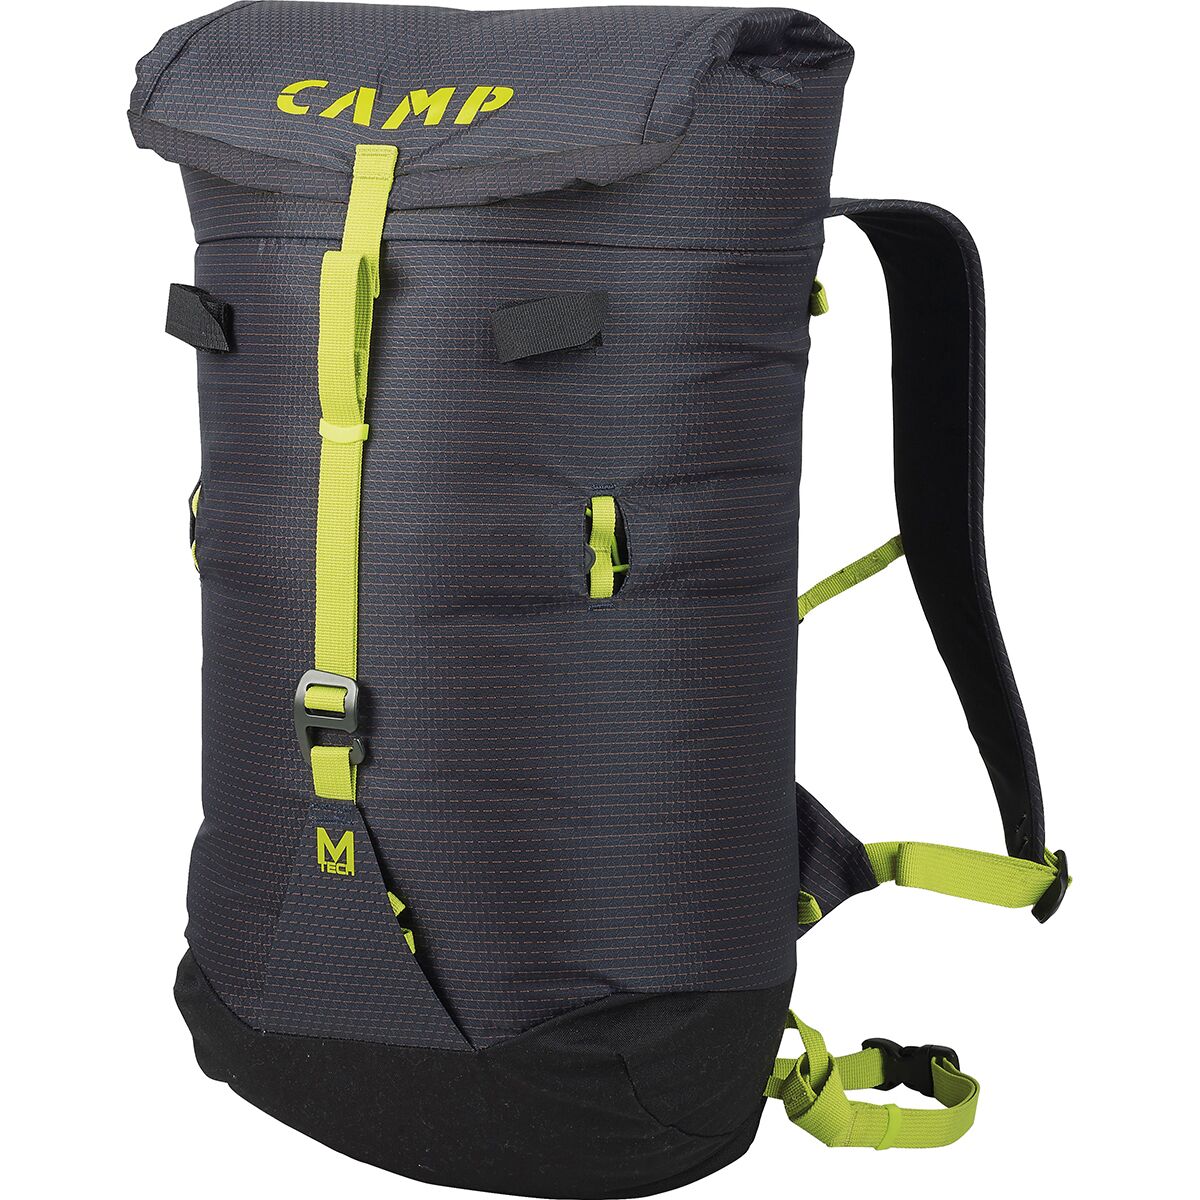 Photos - Backpack CAMP M-Tech Bag 